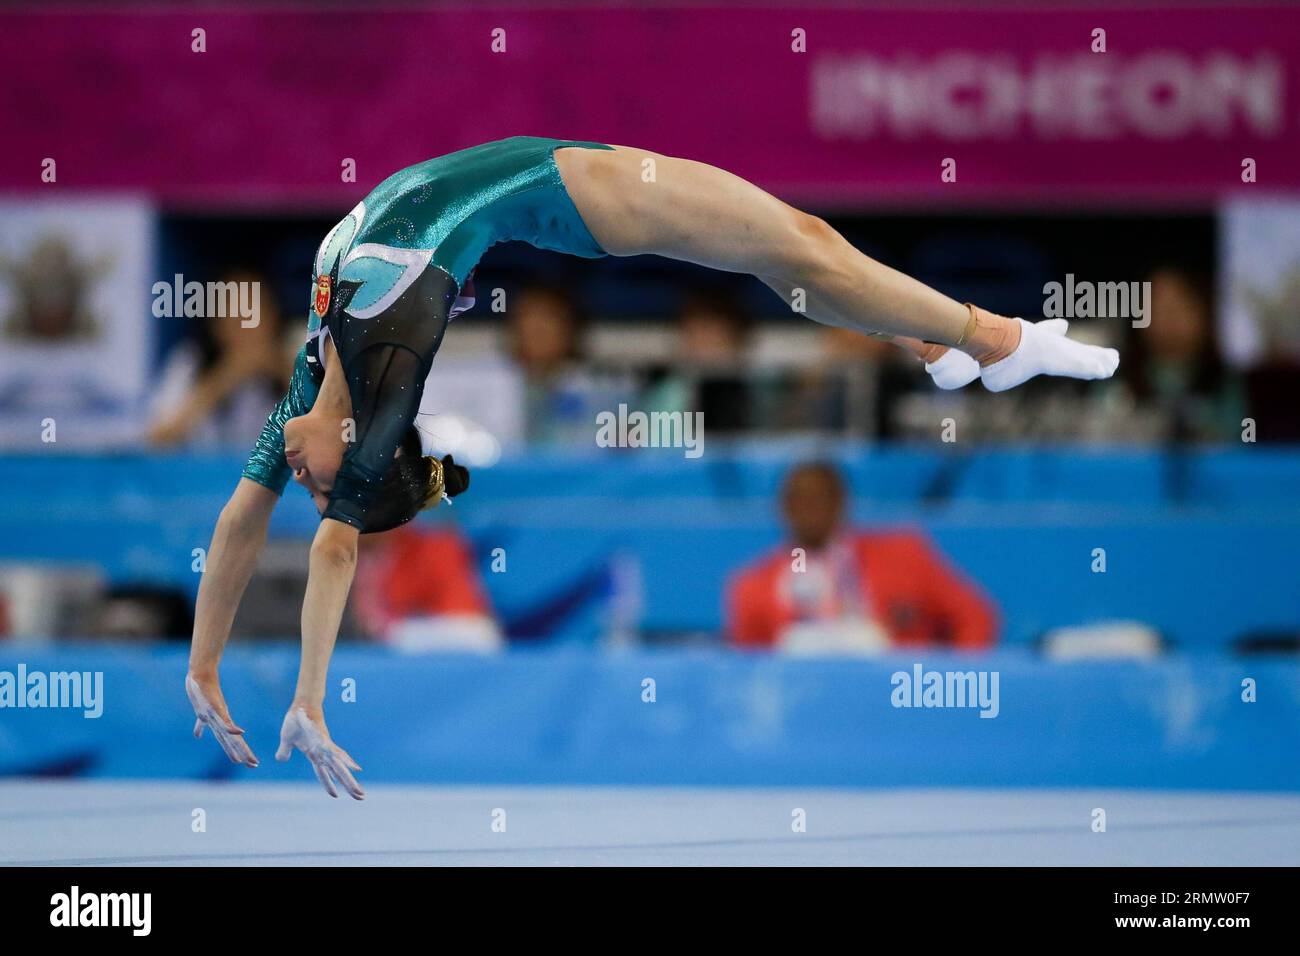 (140925) -- INCHEON, 25 settembre 2014 -- Yao Jinnan of China si esibisce durante la Women's Floor Exercise final of Gymnastics Artistic event in occasione dei diciassettesimi Giochi asiatici di Incheon, Corea del Sud, 25 settembre 2014. Yao Jinnan ha conquistato il titolo con 13,966 punti. )(mcg) (SP)COREA DEL SUD-INCHEON-17TH ASIAN GAMES-GYMNASTICS ARTISTIC ZhengxHuansong PUBLICATIONxNOTxINxCHN Incheon Sept 25 2014 Yao of China si esibisce durante la Women S Floor EXERCISE Final of Gymnastics ARTISTIC Event ai 17th Asian Games di Incheon Corea del Sud settembre 25 2014 Yao ha rivendicato il titolo con 13 punti MCG SP Corea del Sud Incheon 17 Foto Stock